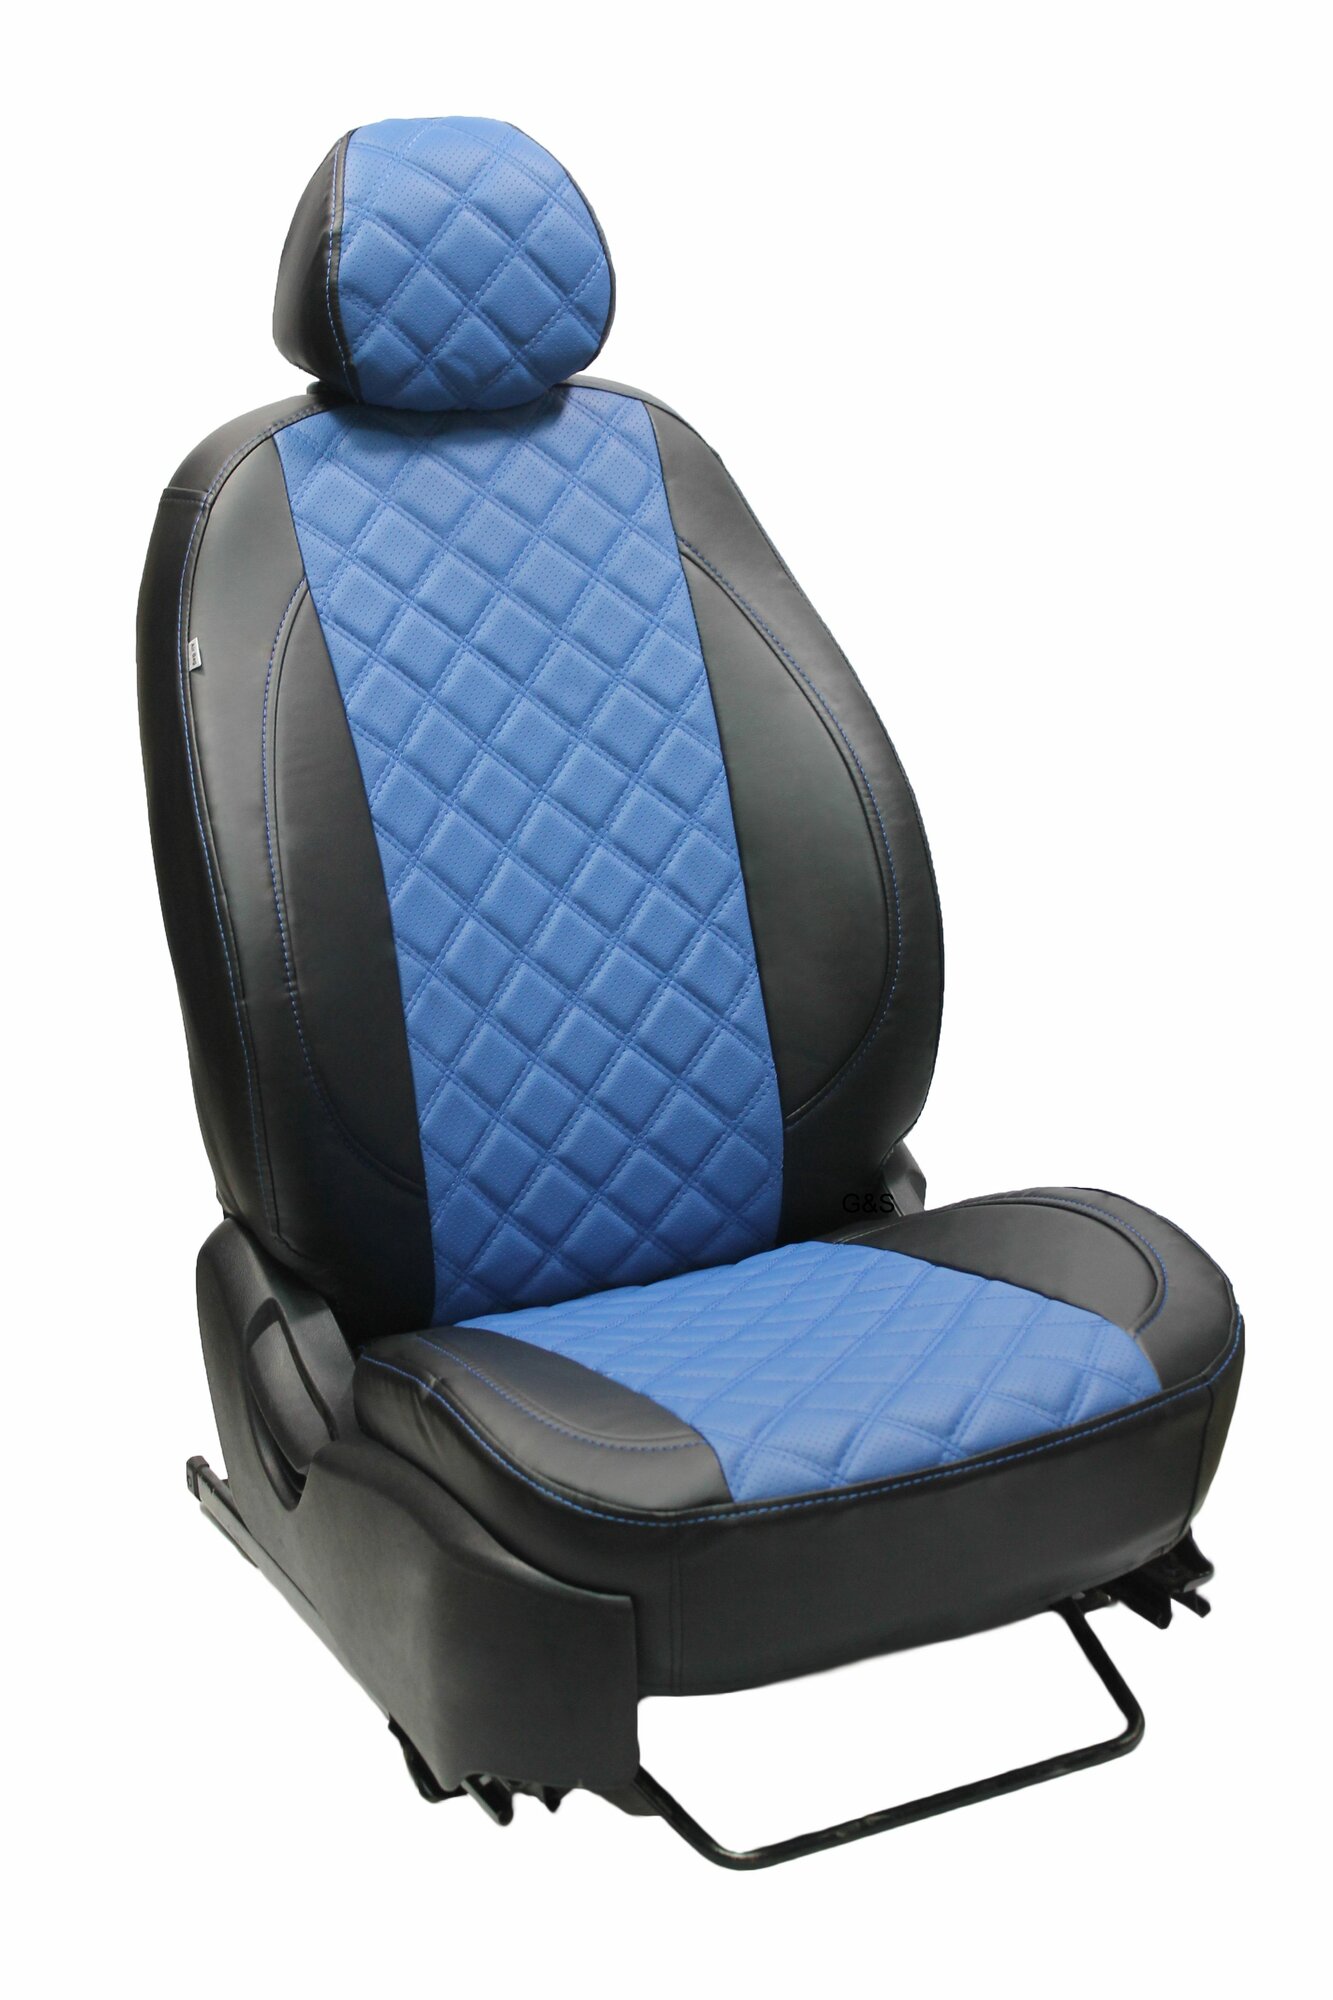 Чехлы для автомобильных сидений комплект Premium на MAZDA 3 (2003-2009; 2010-2012) седан хэтчбек авточехлы модельные экокожа черно-синий ромб